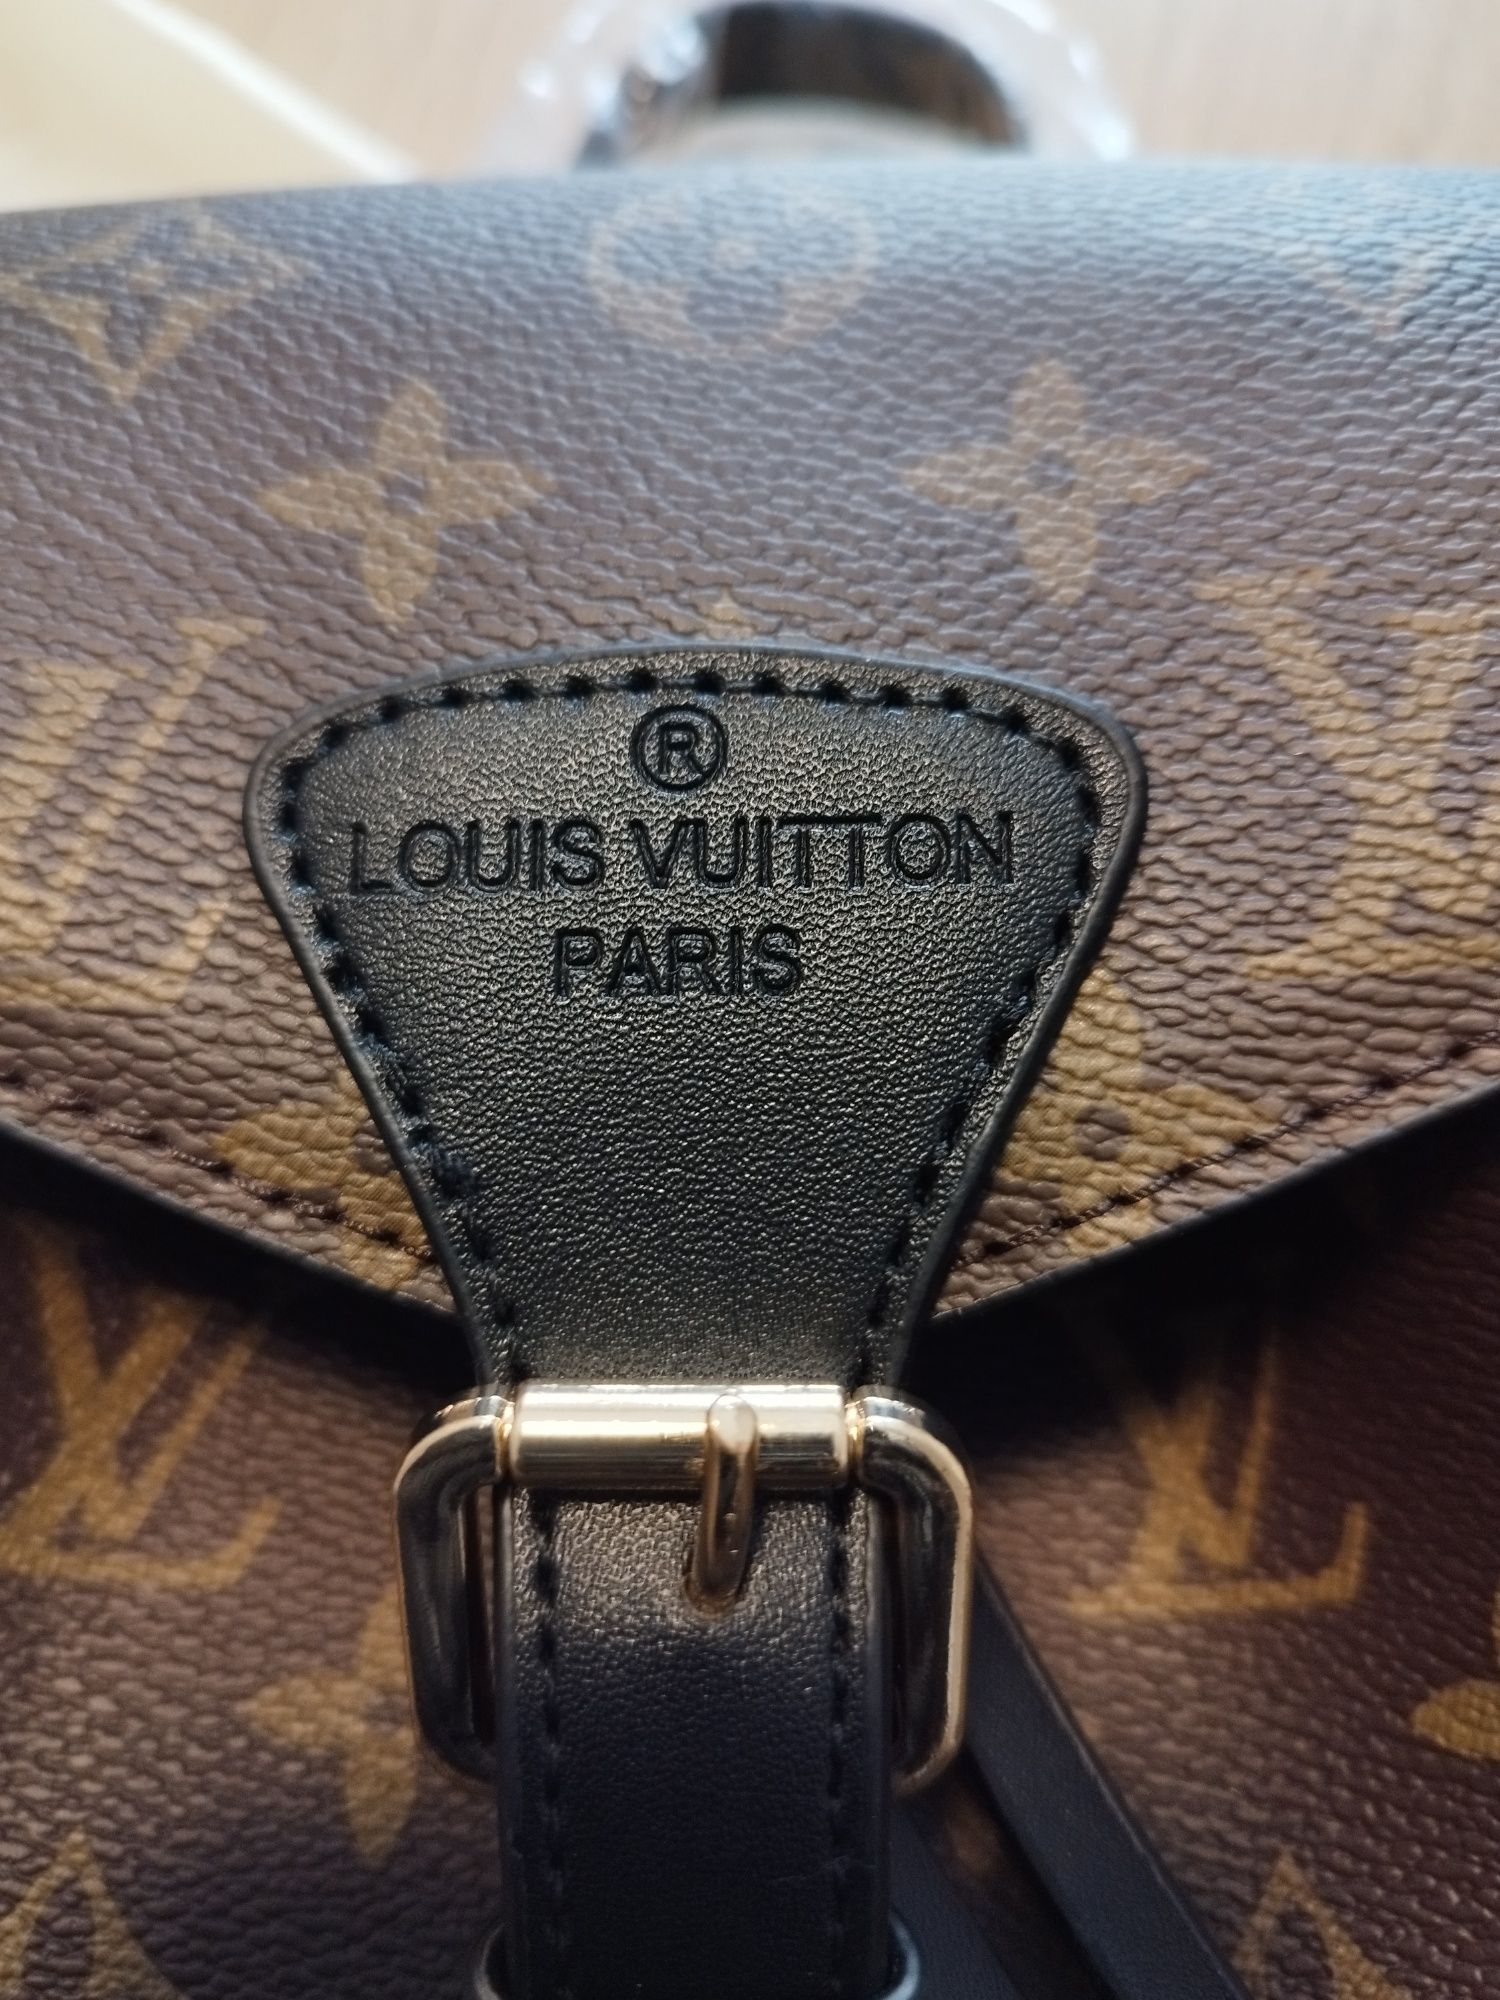 Mochila Louis Vuitton